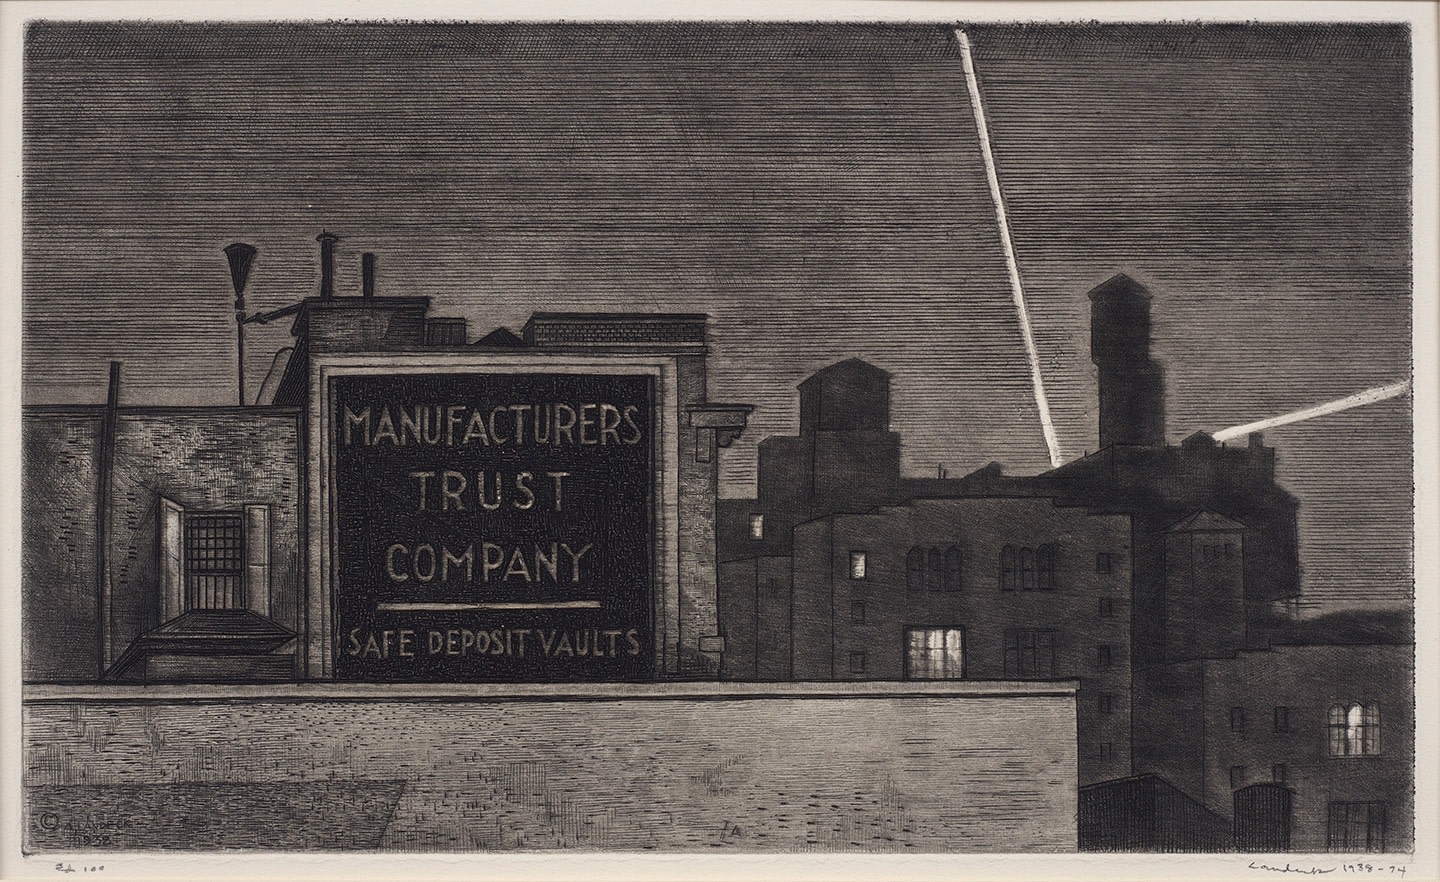 Armin Landeck (1905-1984), Manufacturers Trust/ Manhattan Nocturne, circa 1938-1974